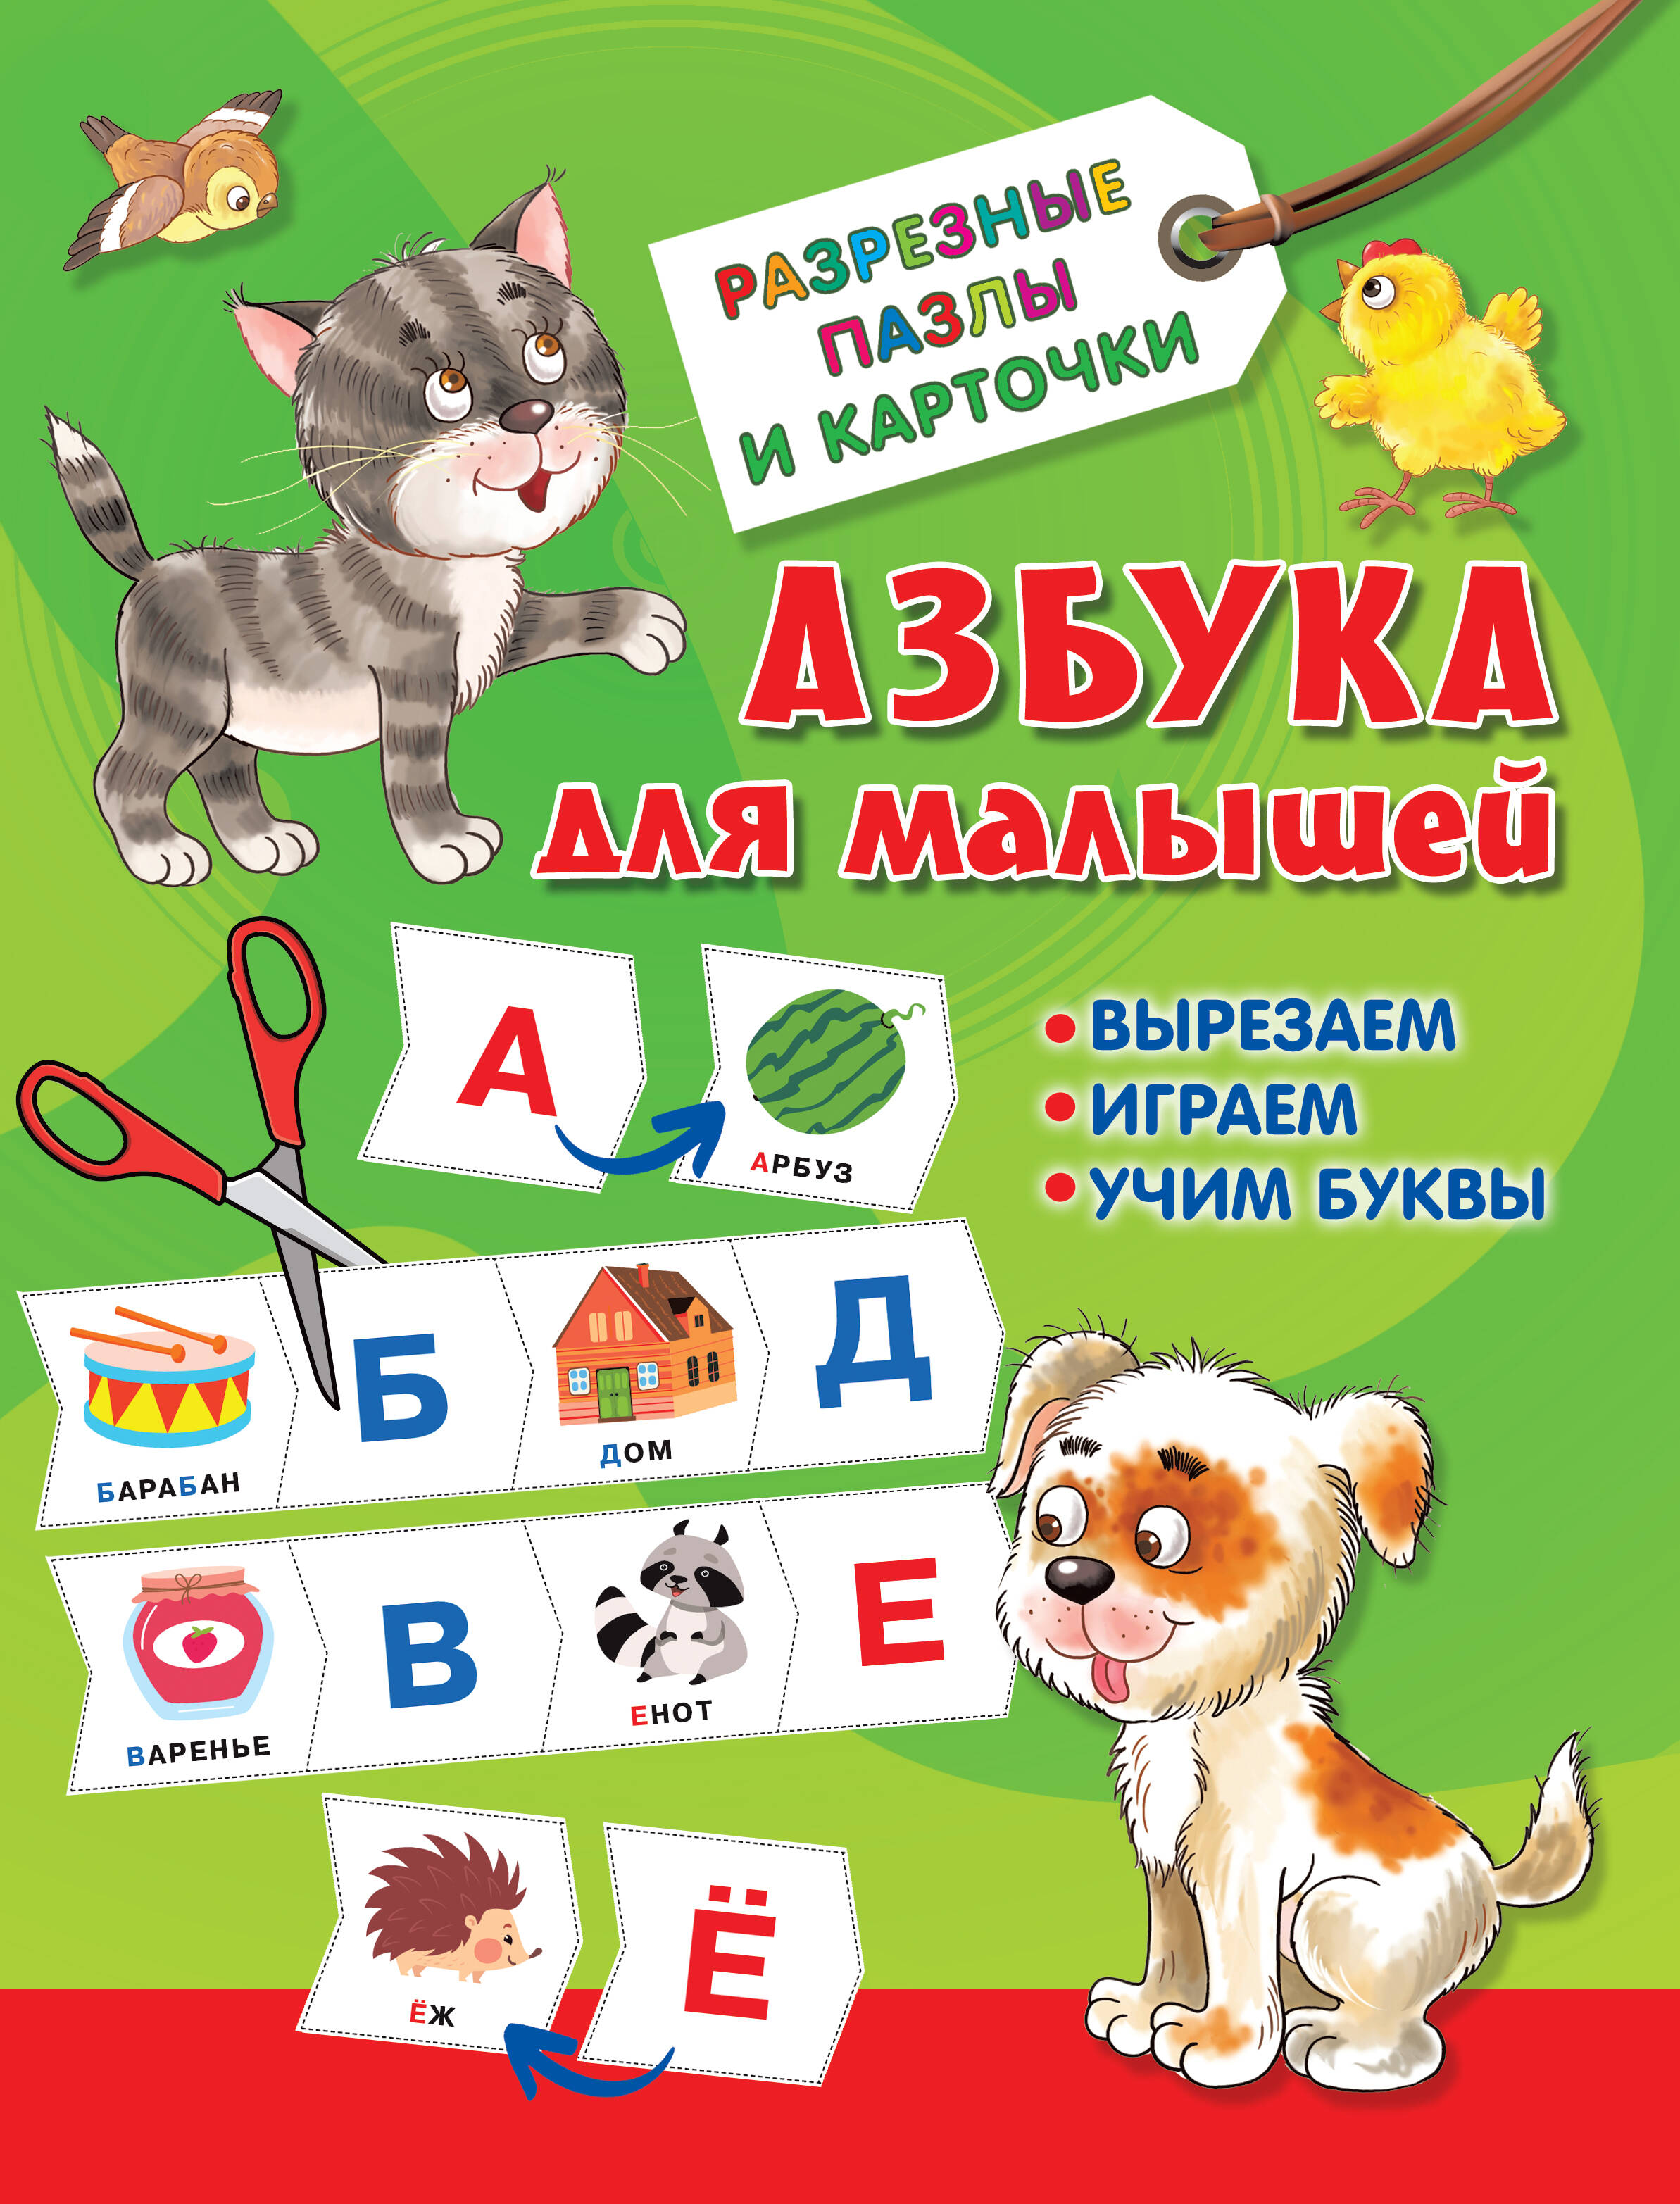 Дмитриева Валентина Геннадьевна Азбука для малышей набор карточек робинс пазлы азбука для малышей 35 шт